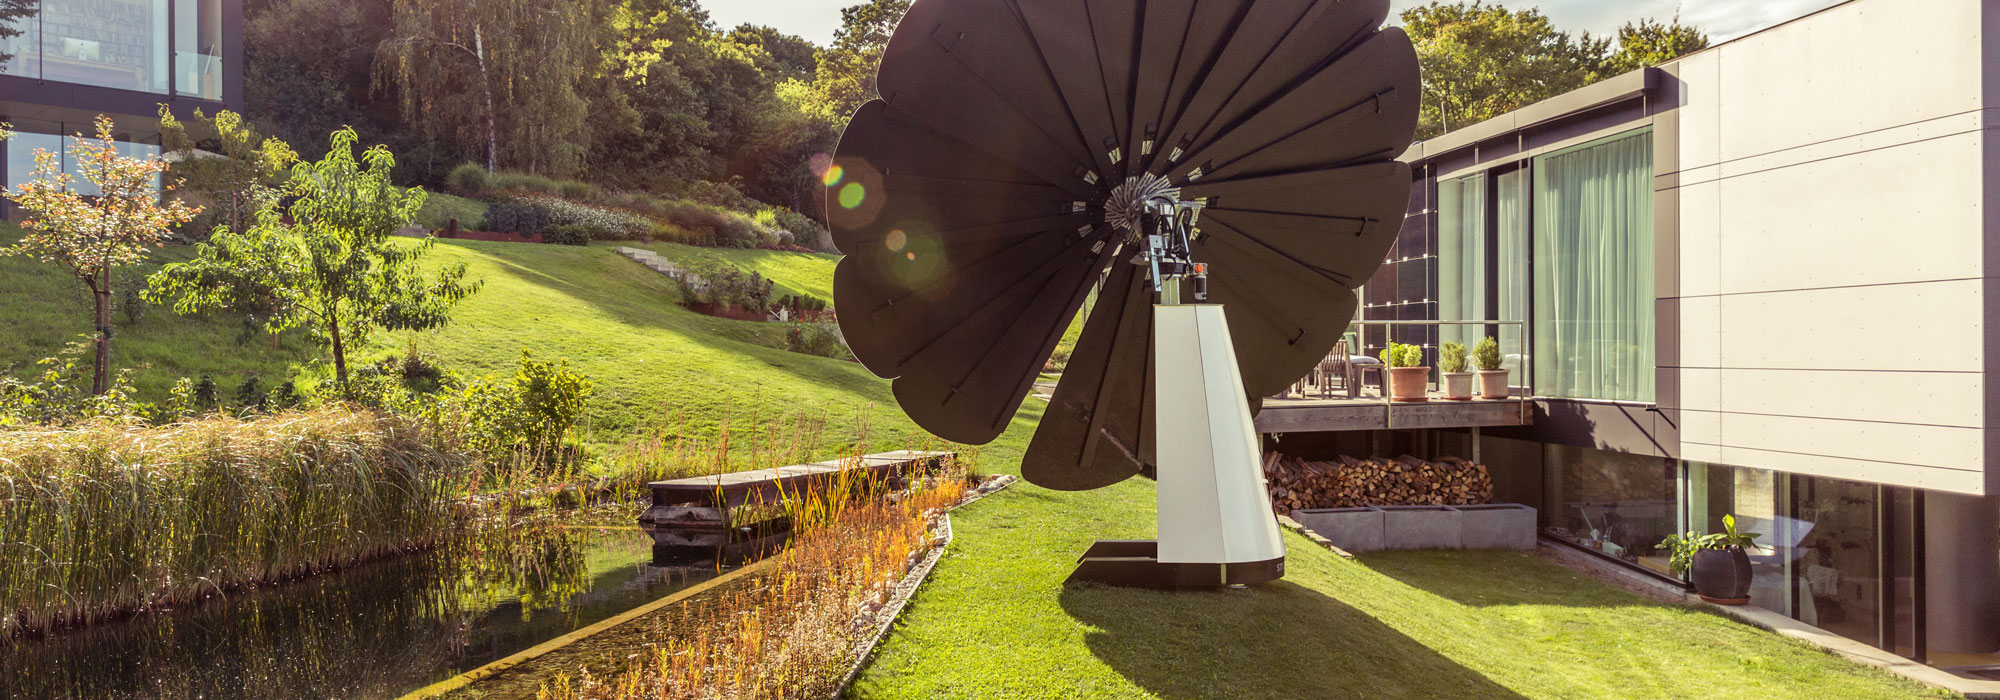 Ein SmartFlower Solar Panel sitzt im Hof neben einem kleinen Teich zwischen zwei Häusern